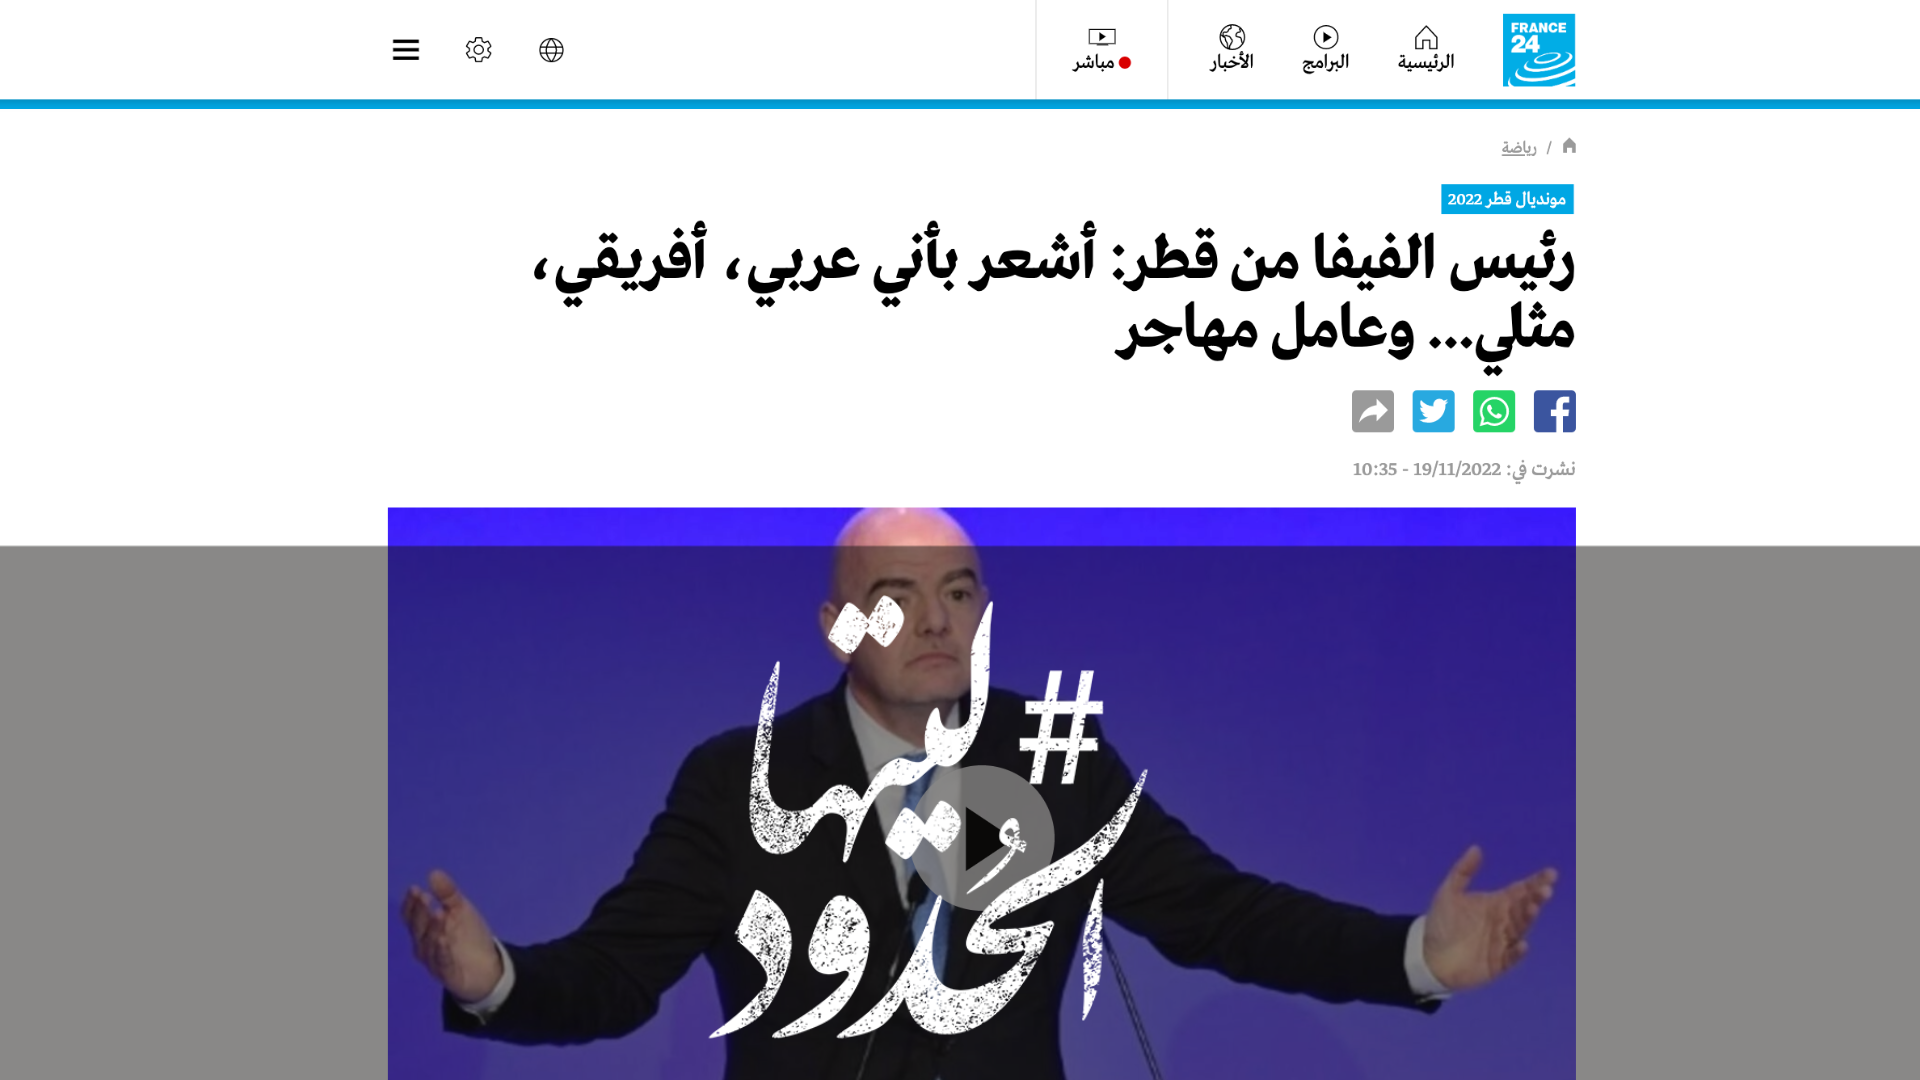 صورة رئيس الفيفا من قطر: أشعر بأني عربي، أفريقي، مثلي... وعامل مهاجر